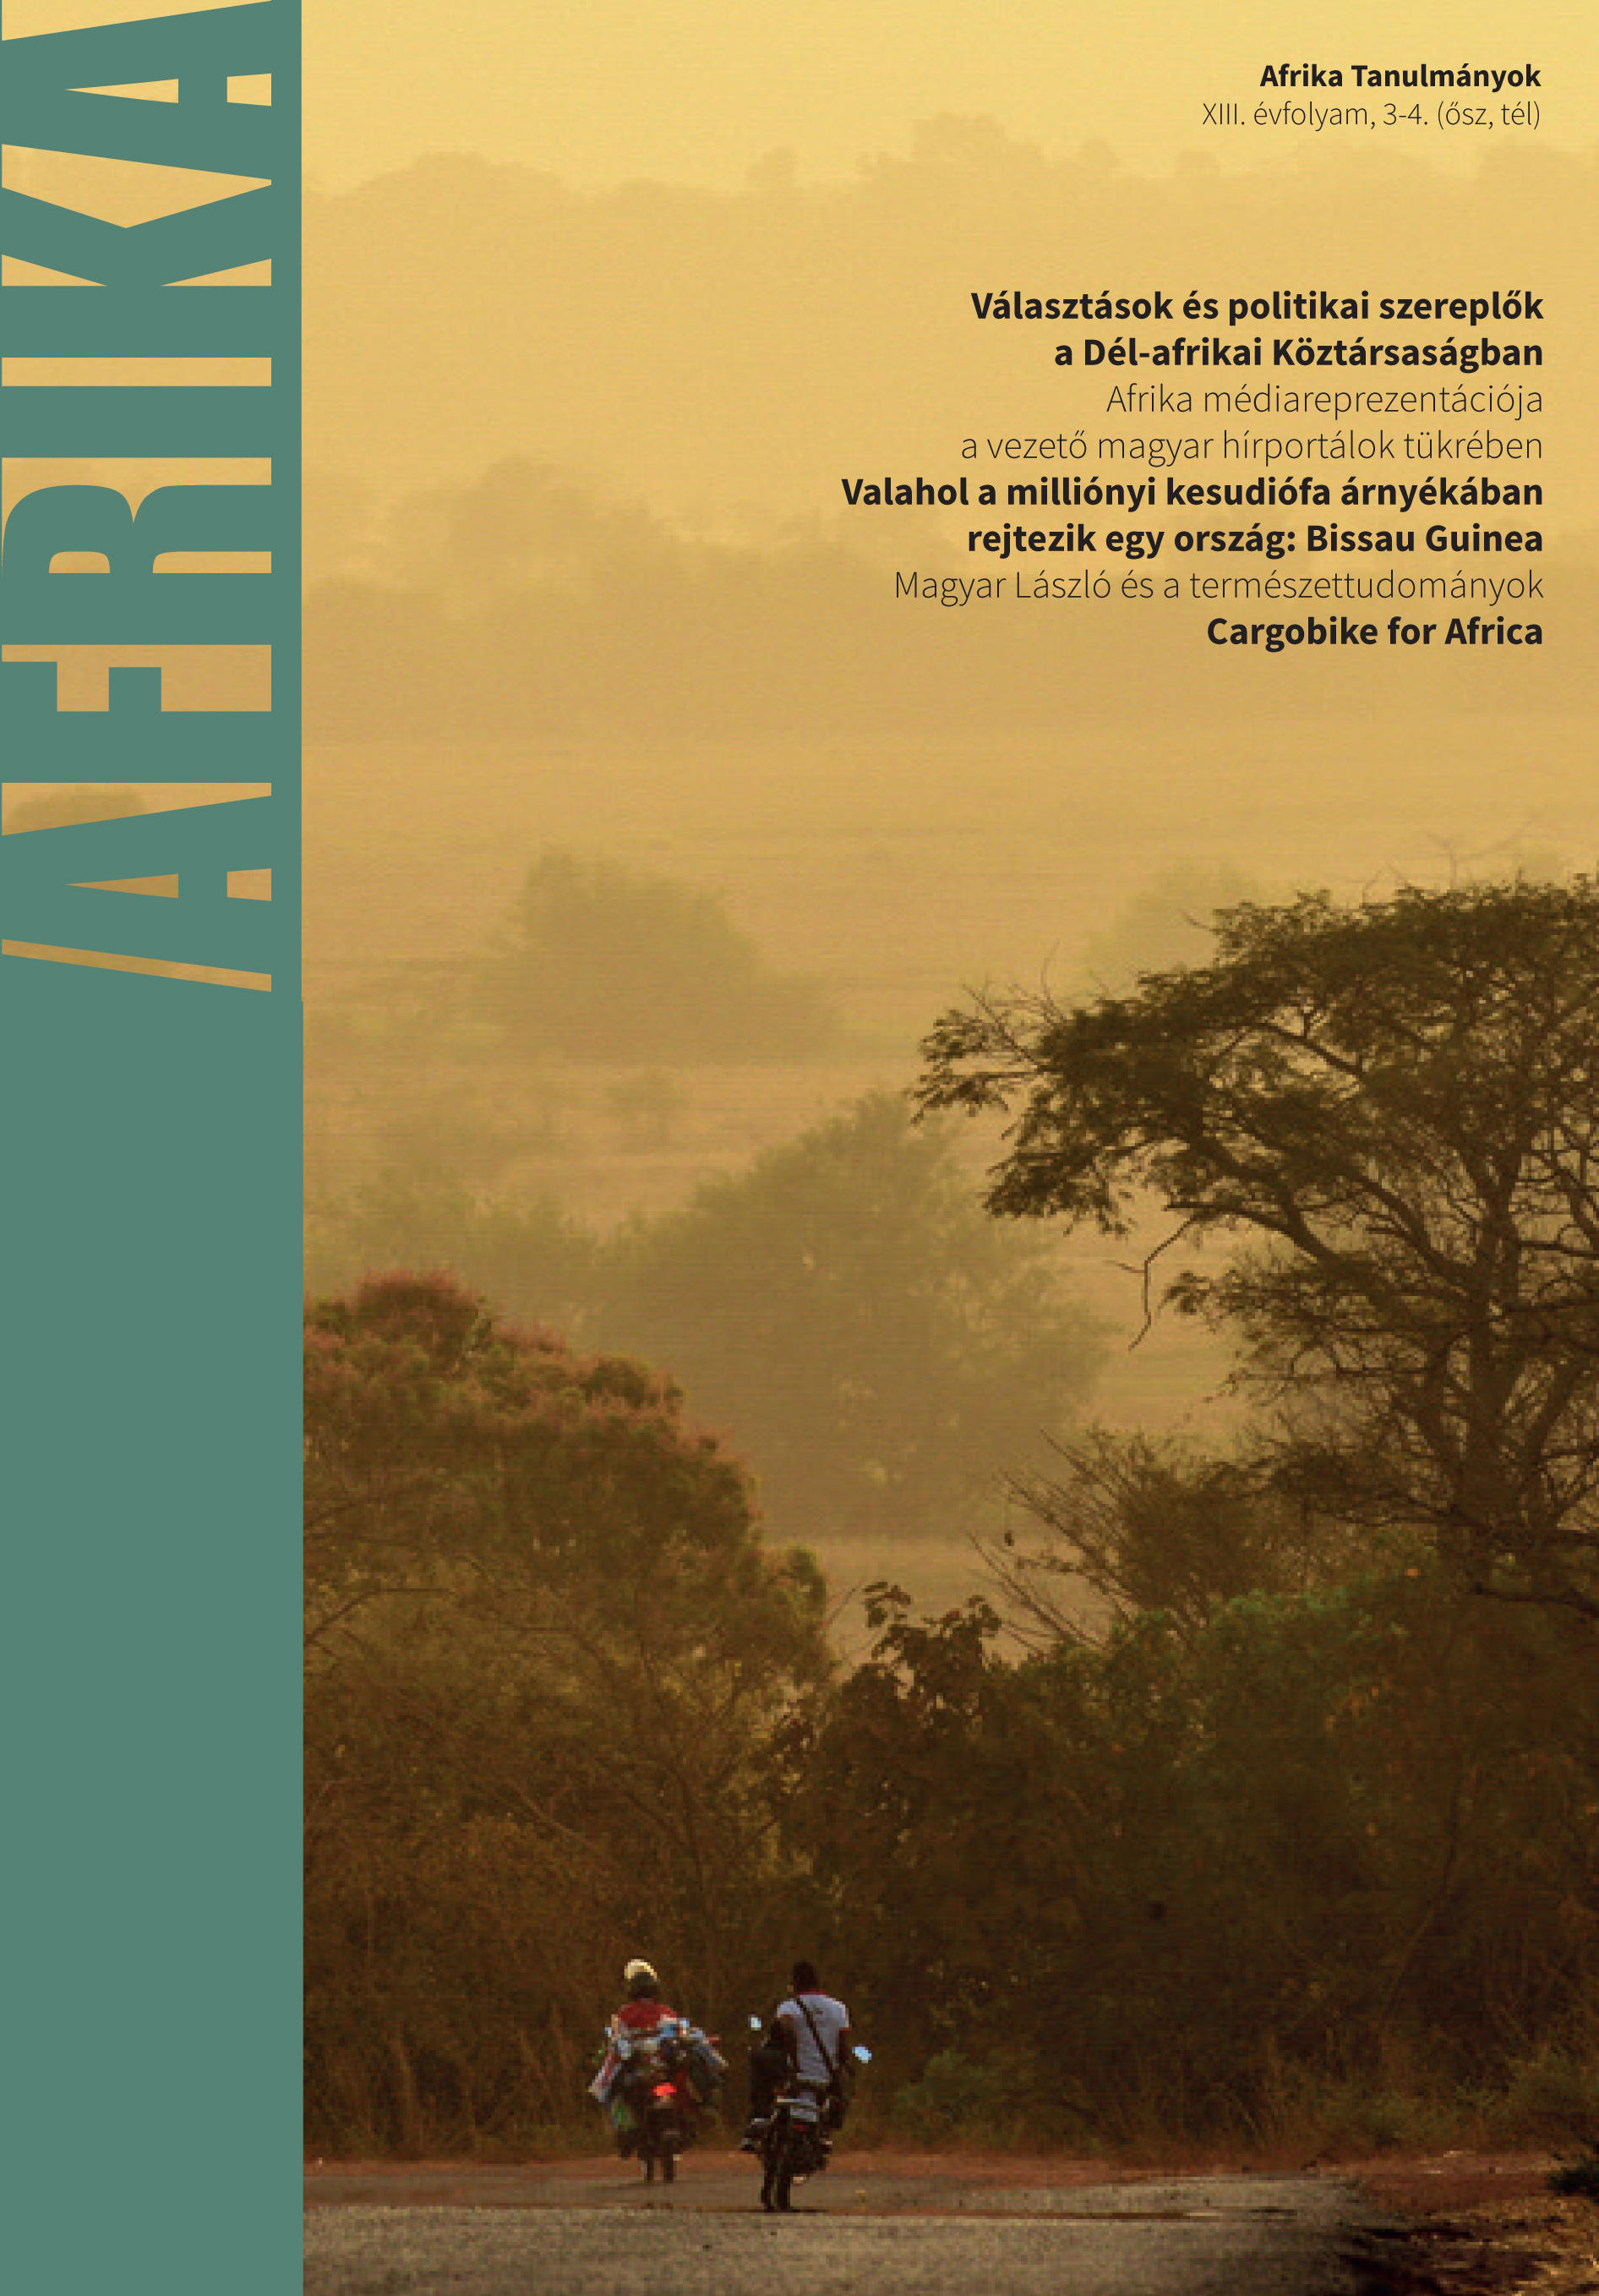 					View Évf. 13 szám 3-4. (2019): Afrika Tanulmányok. 2019. ősz és tél
				